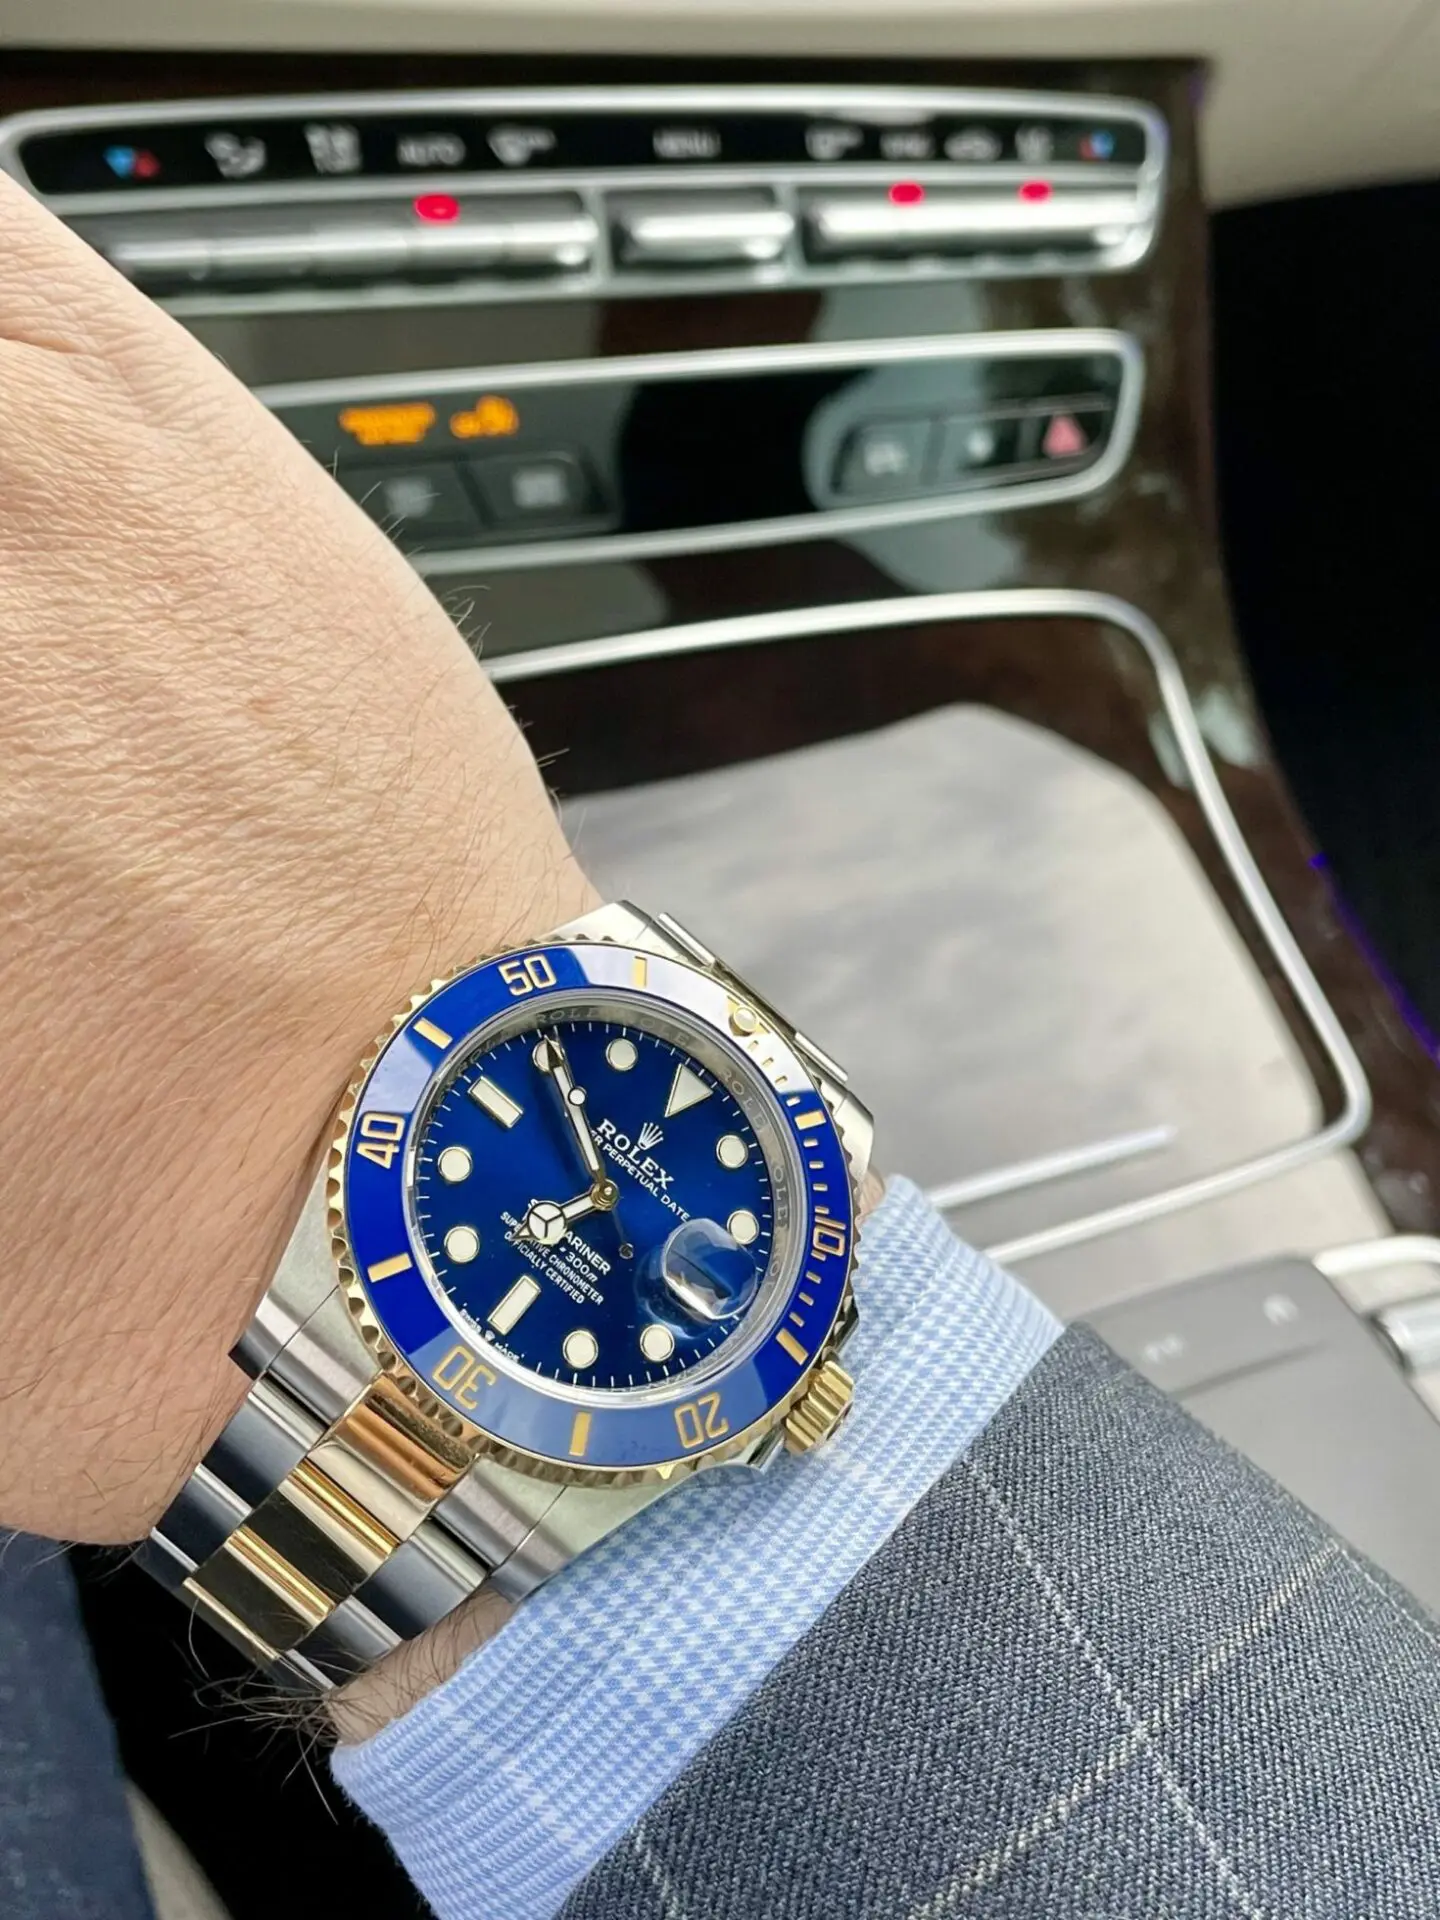 Rolex Submariner Date - Men's Watches from TT Luxury Ltd UK